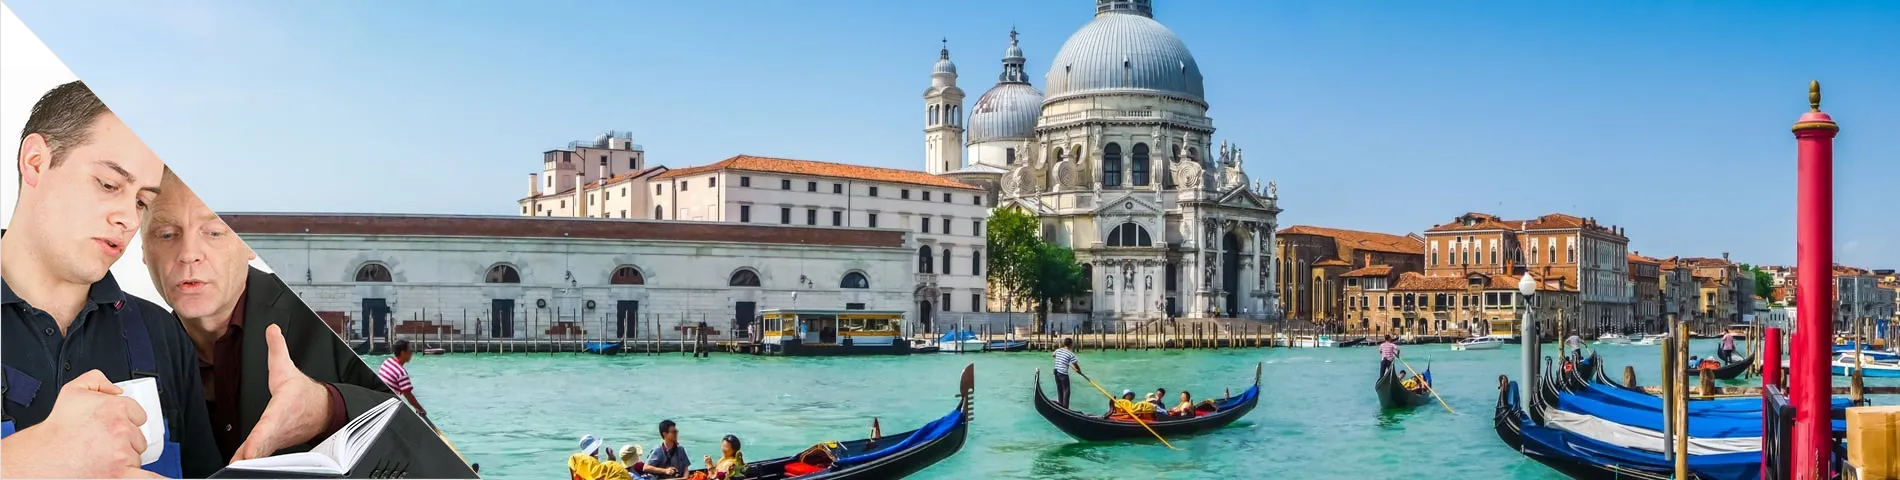 Benátky - Výuka jeden na jednoho